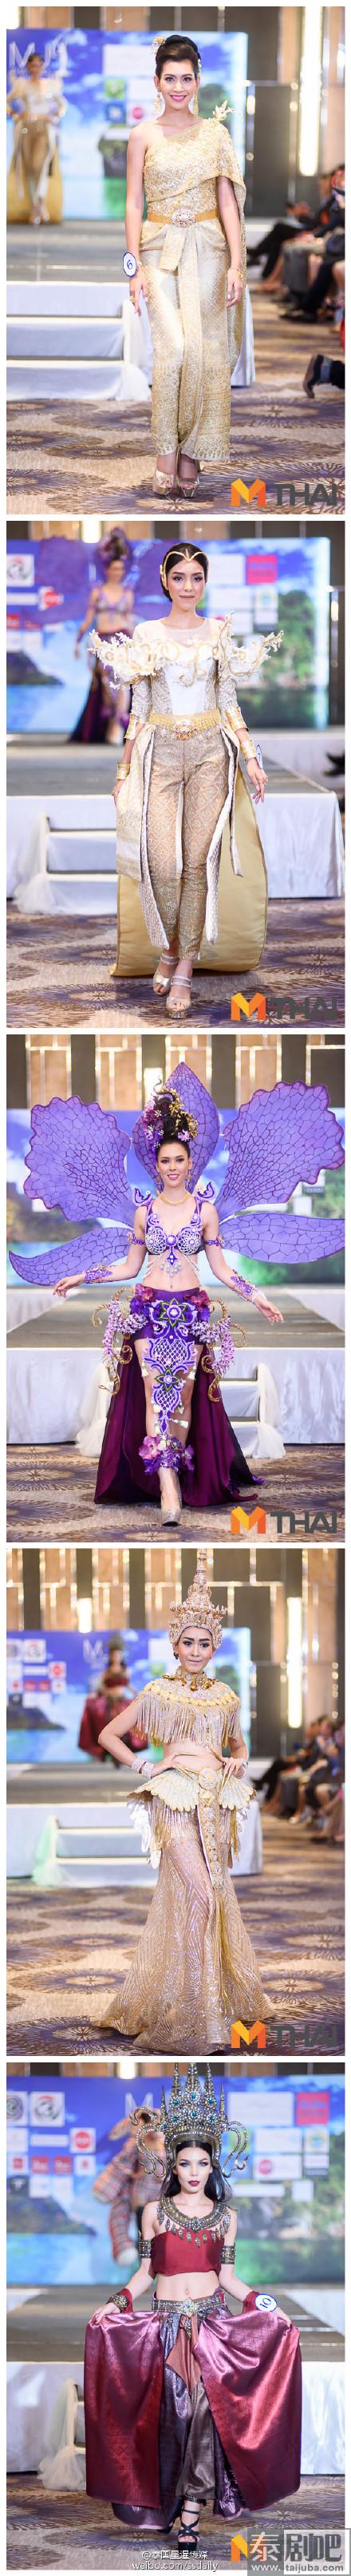 泰国创意服装秀